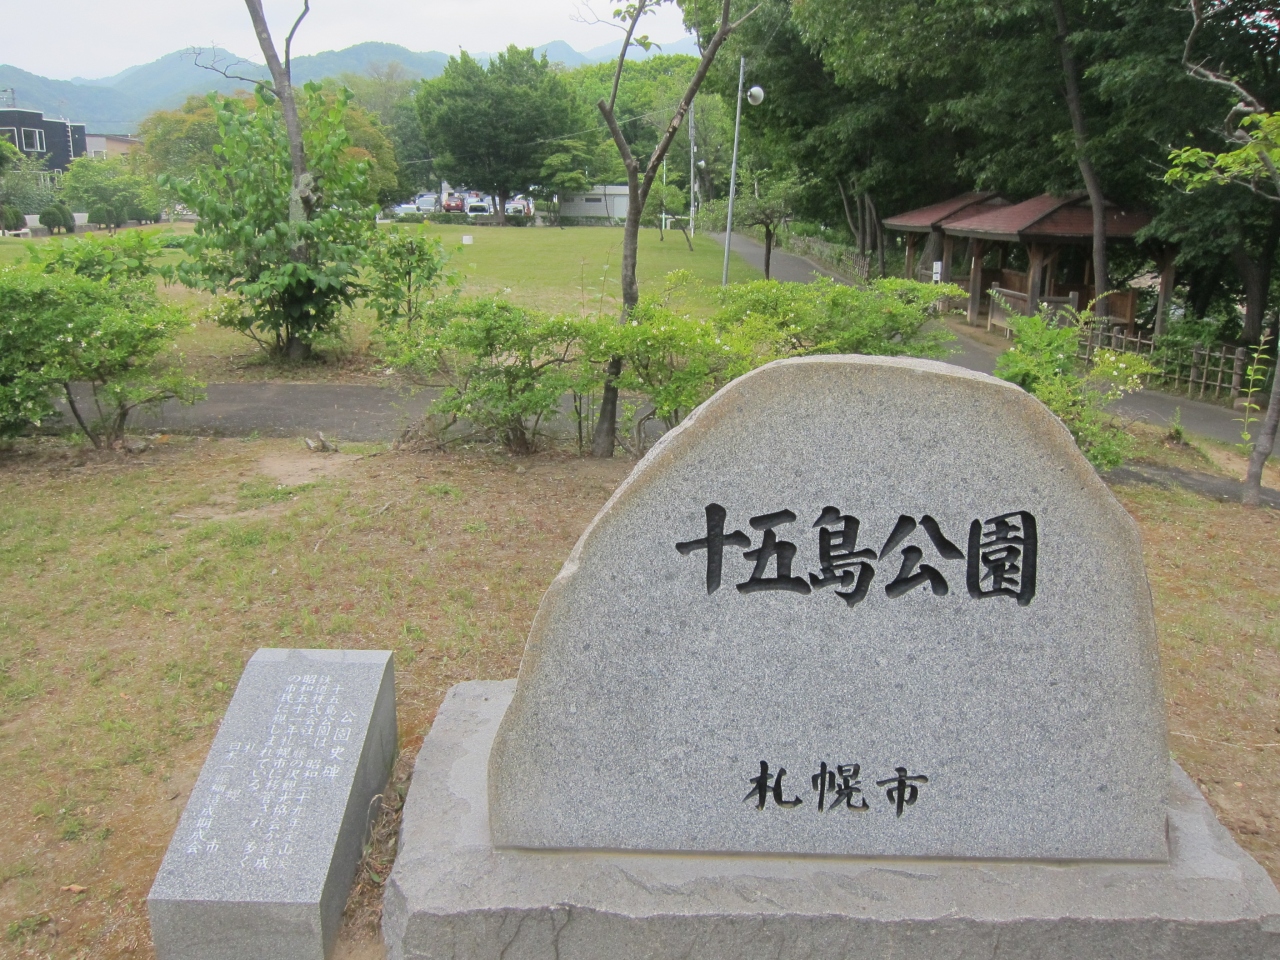 札幌の旅行の夏の人気スポット30選　26位:十五島公園